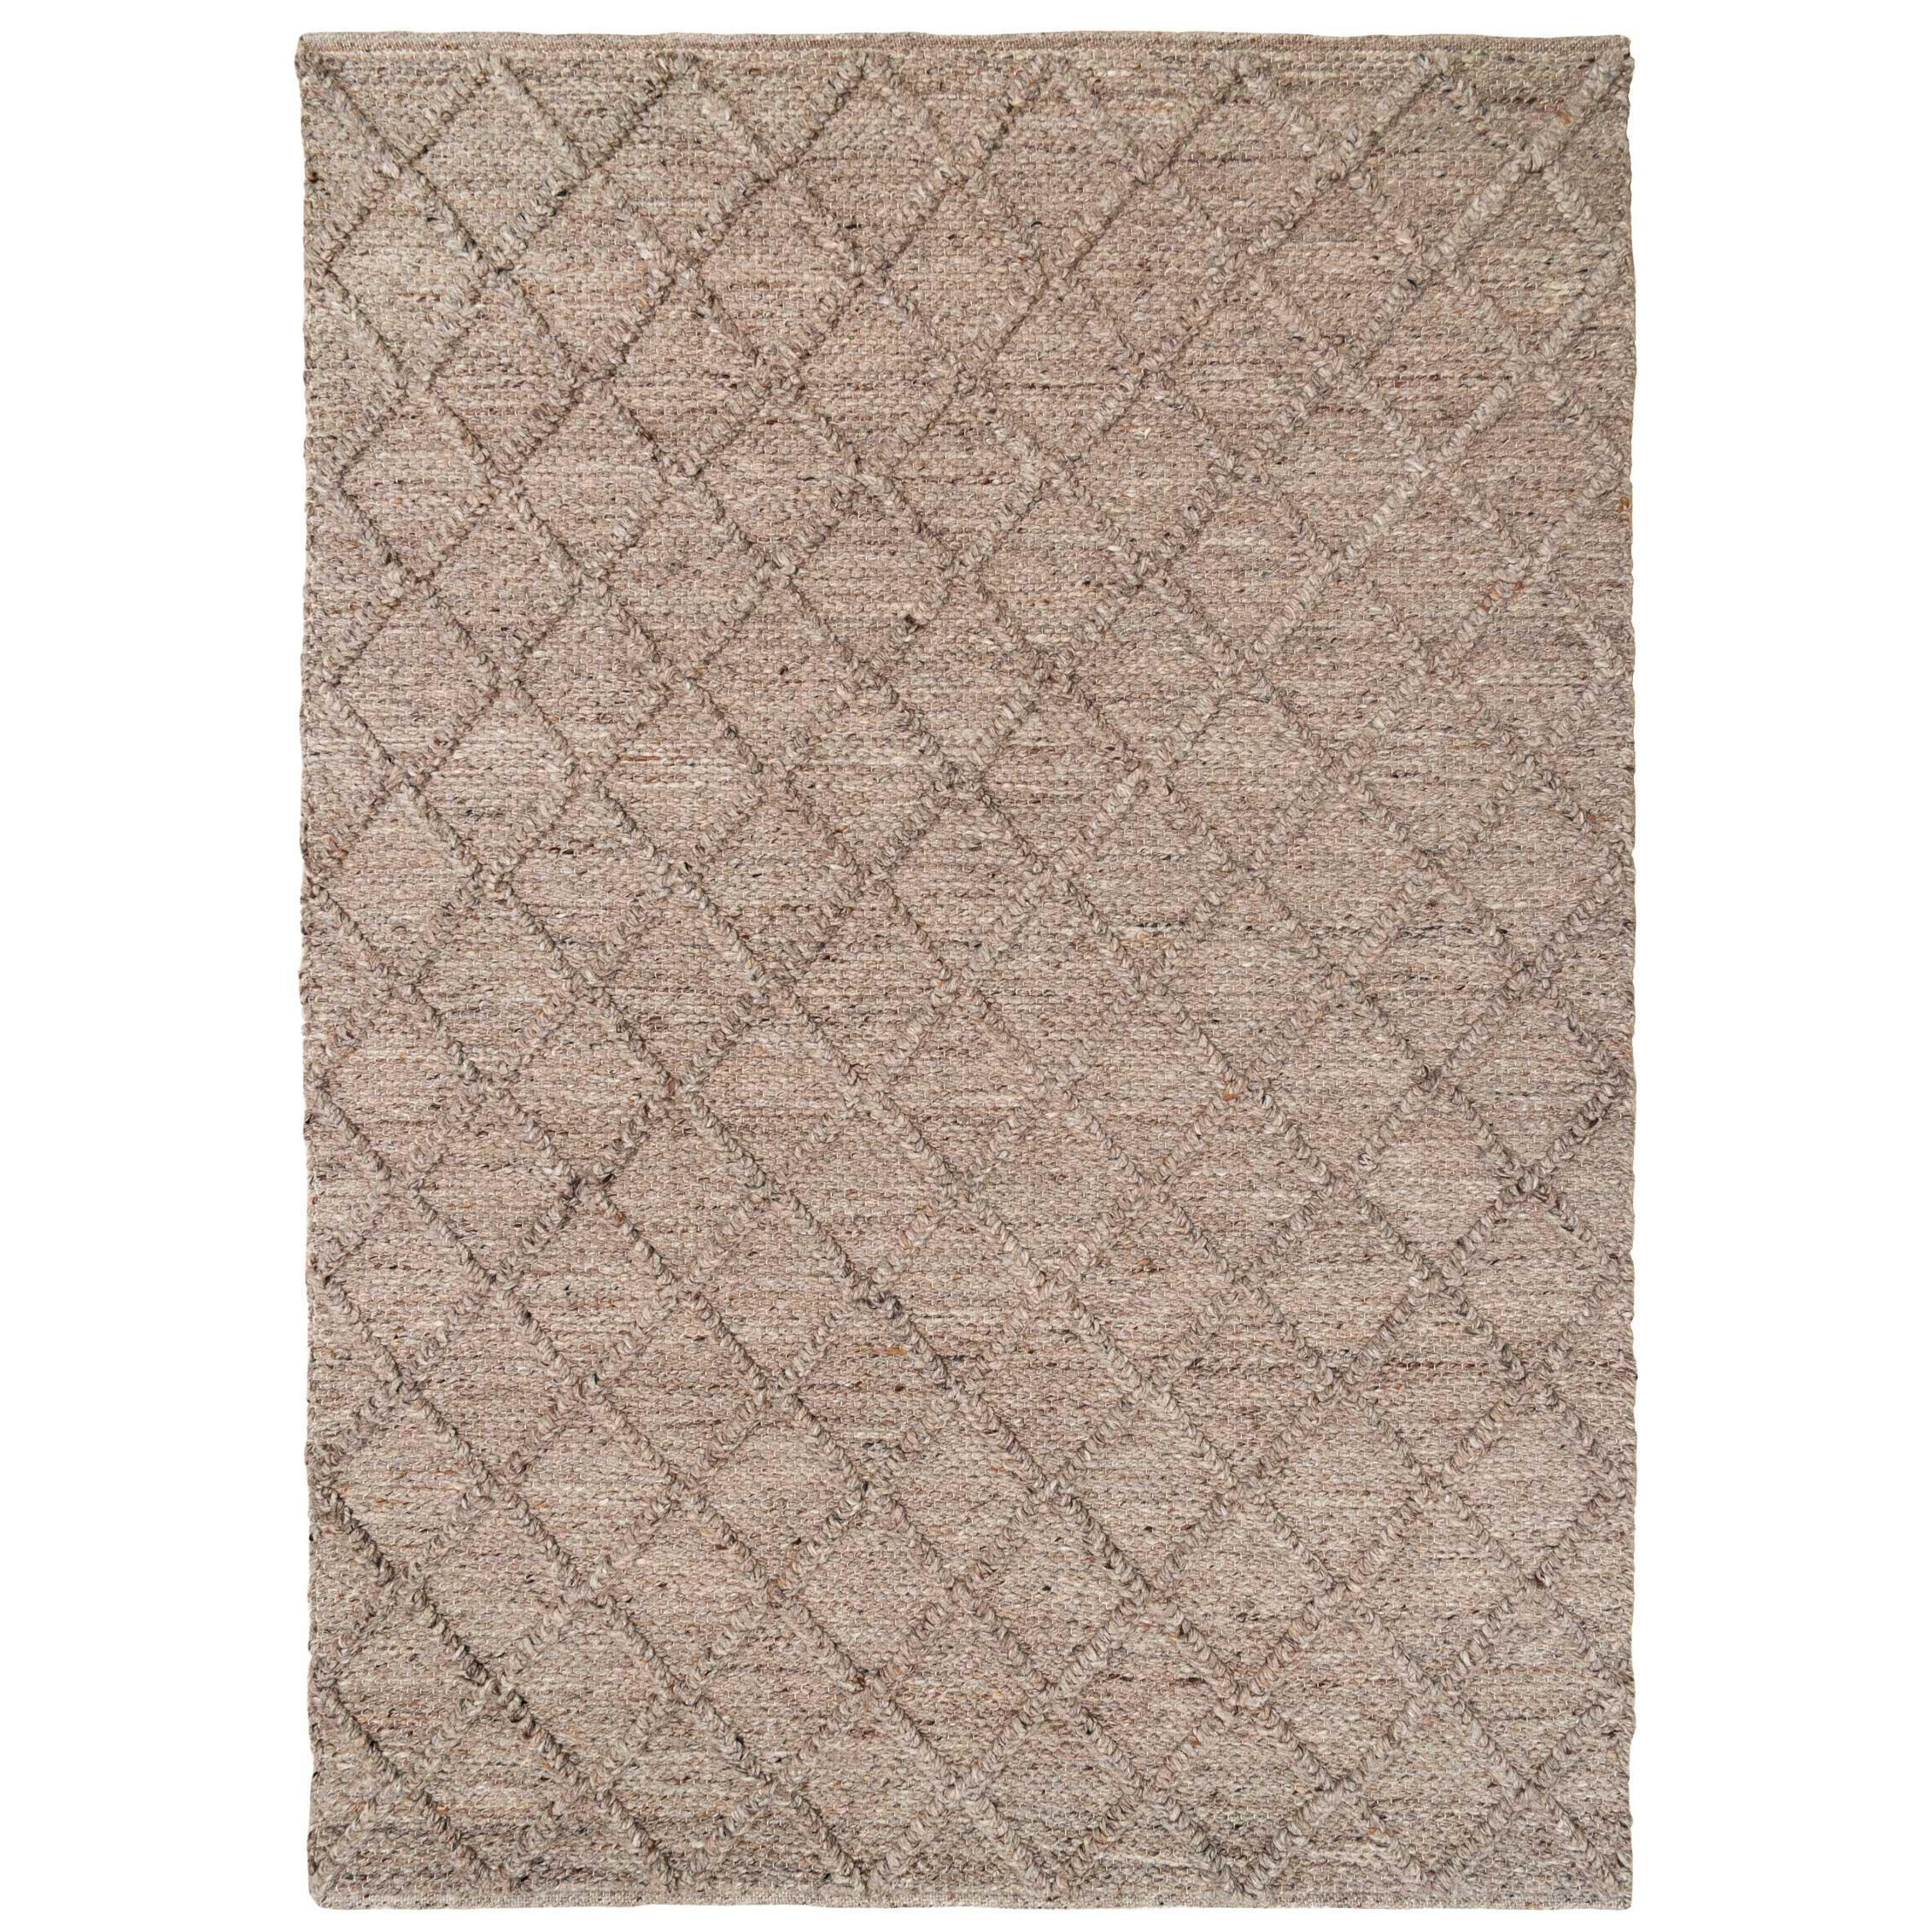 Beige Luxury Wool Blend Diamond Pattern Rug - image 1